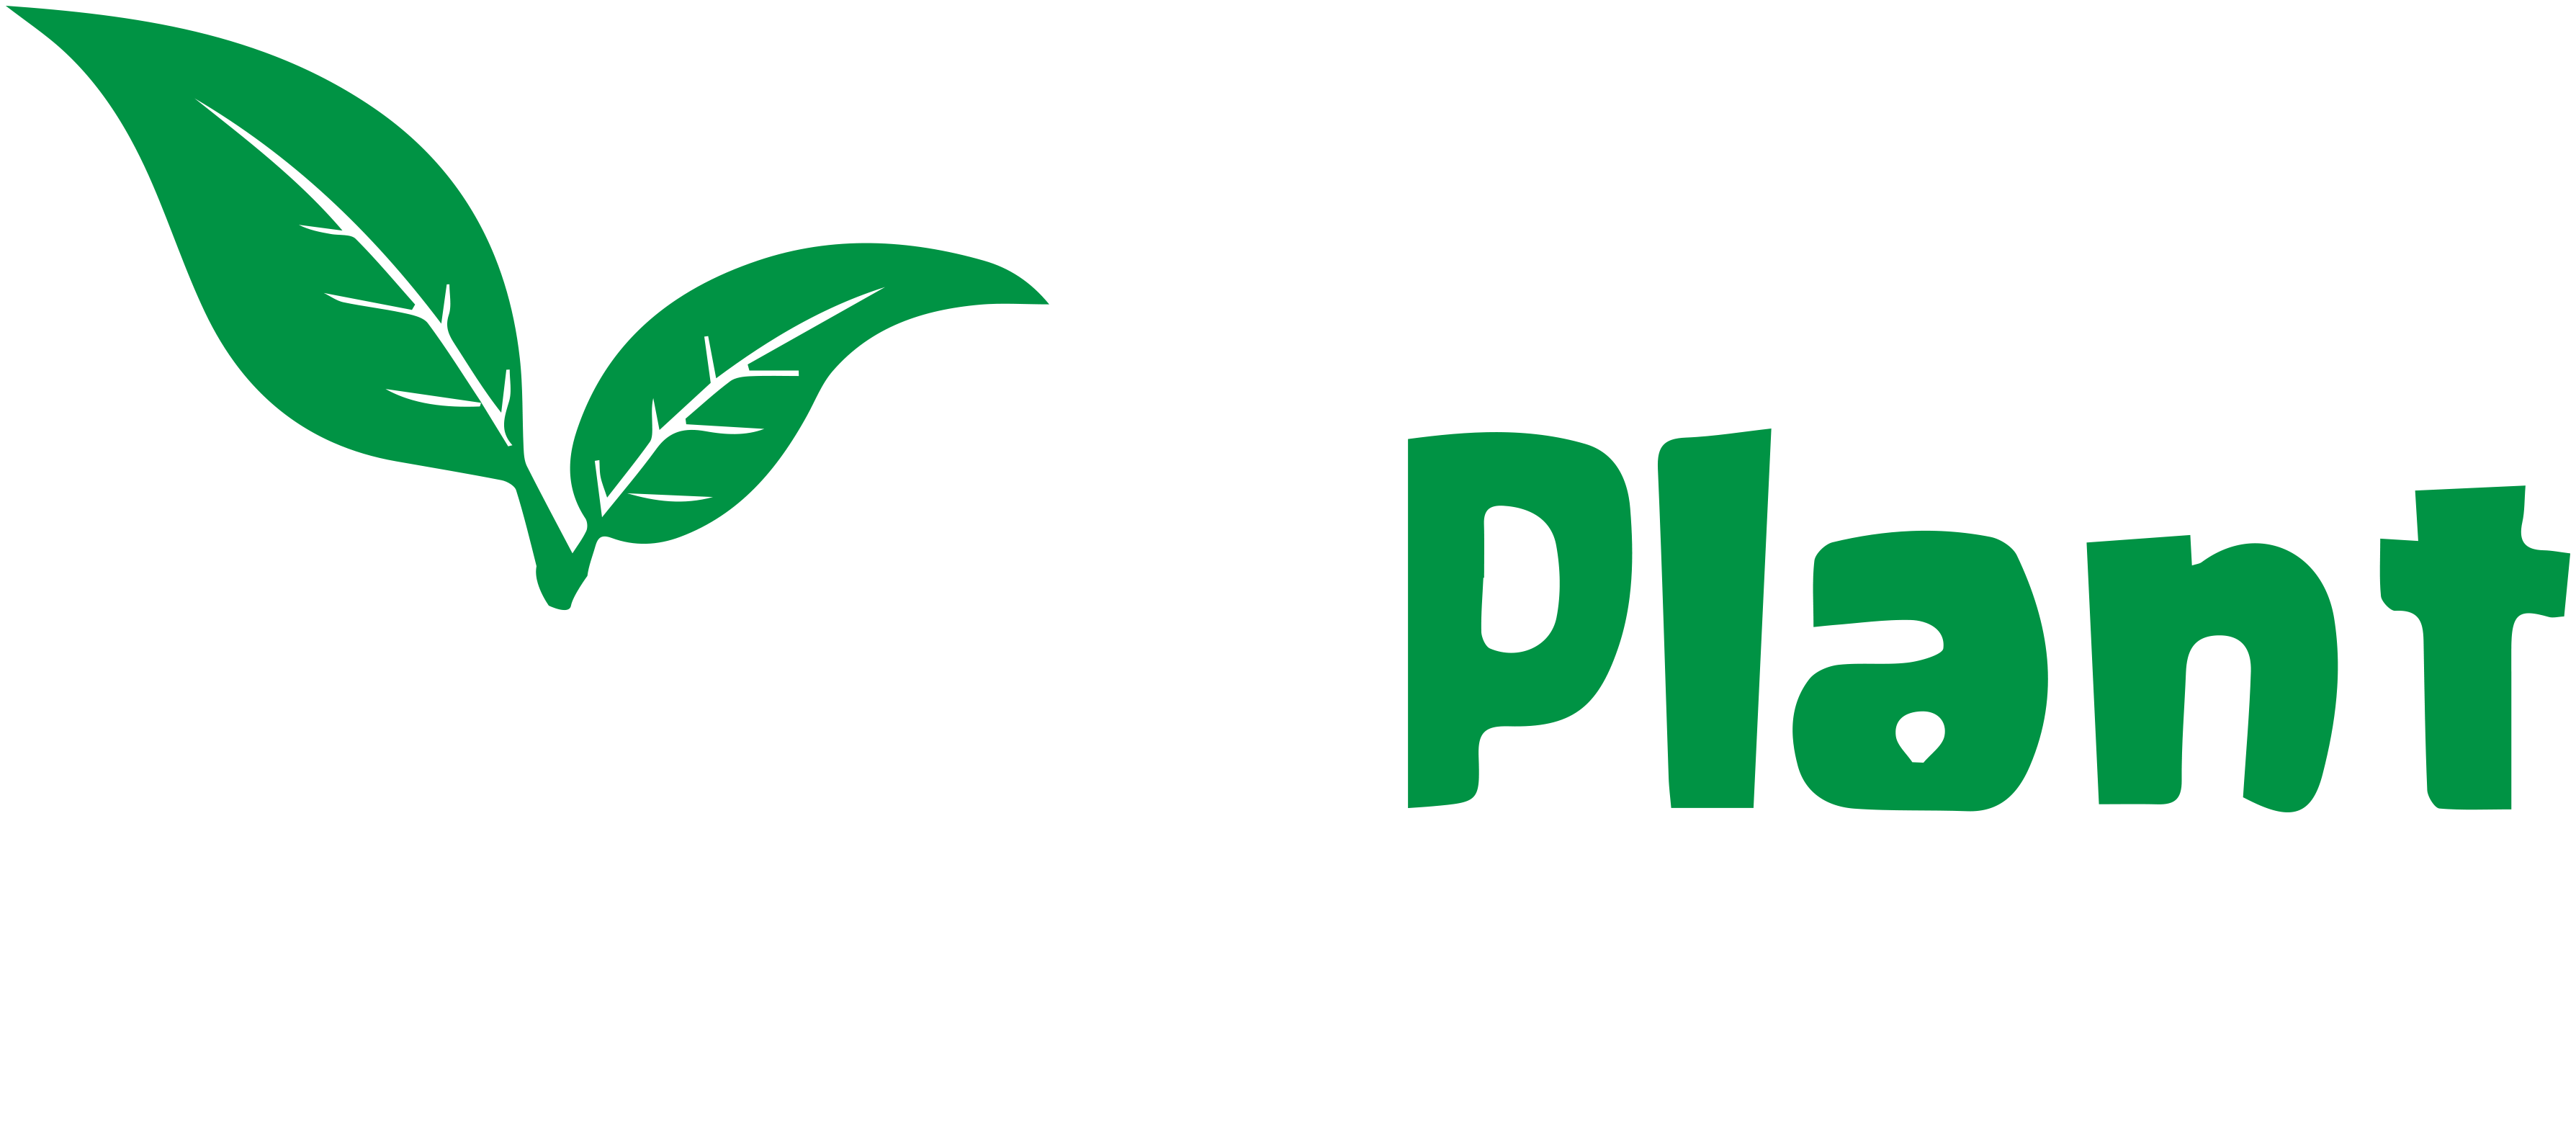 TalkPlant